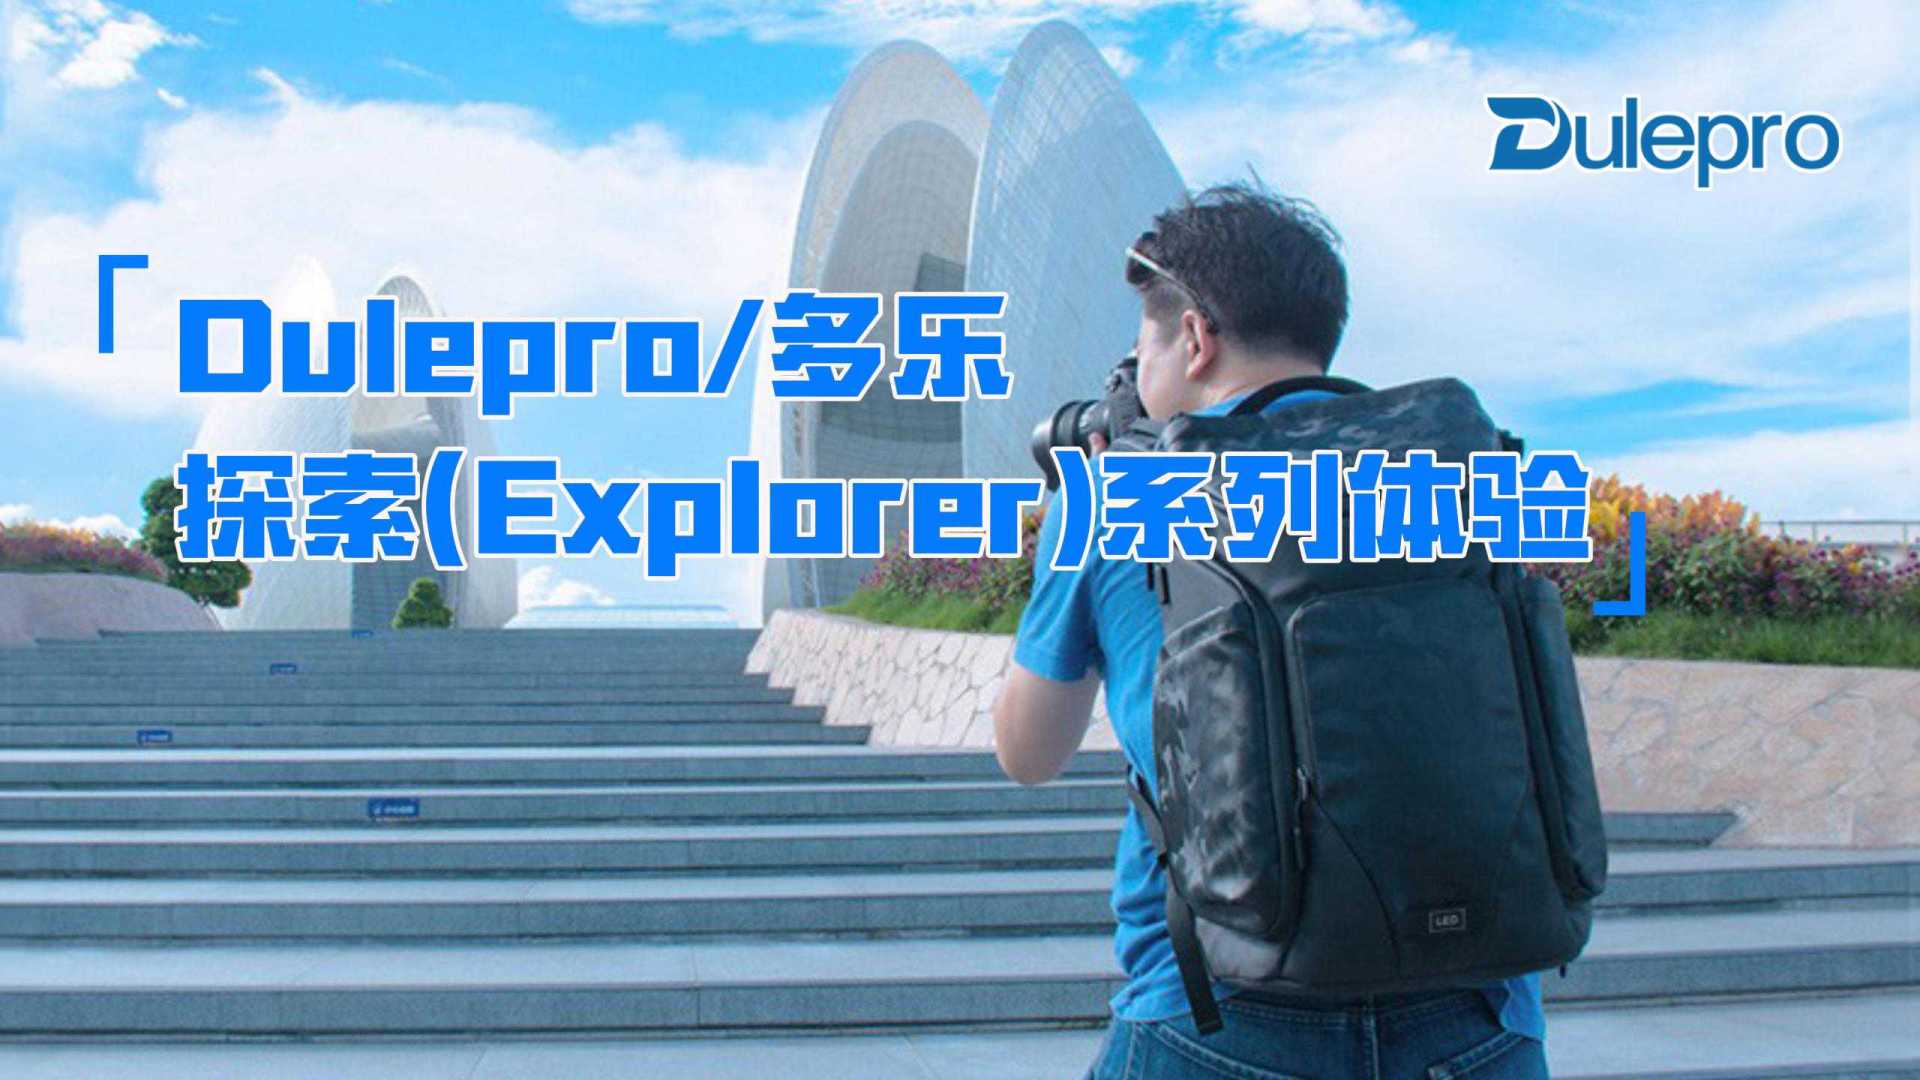 <真得需要能装的包>Dulepro(多乐)探索(Explorer)系列摄影包体验